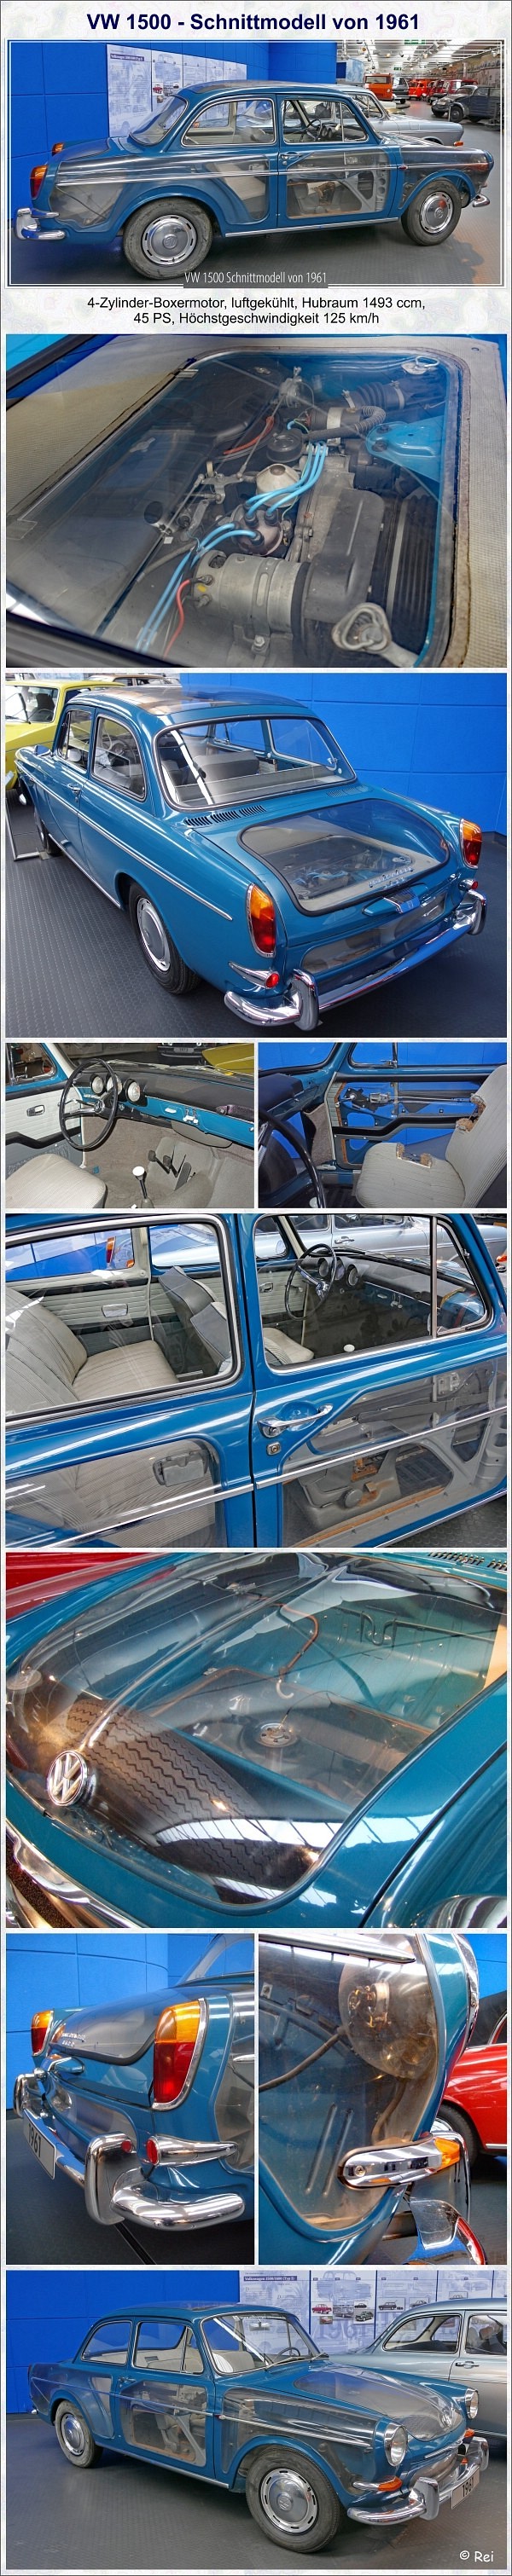 VW 1500 Schnittmodell von 1961